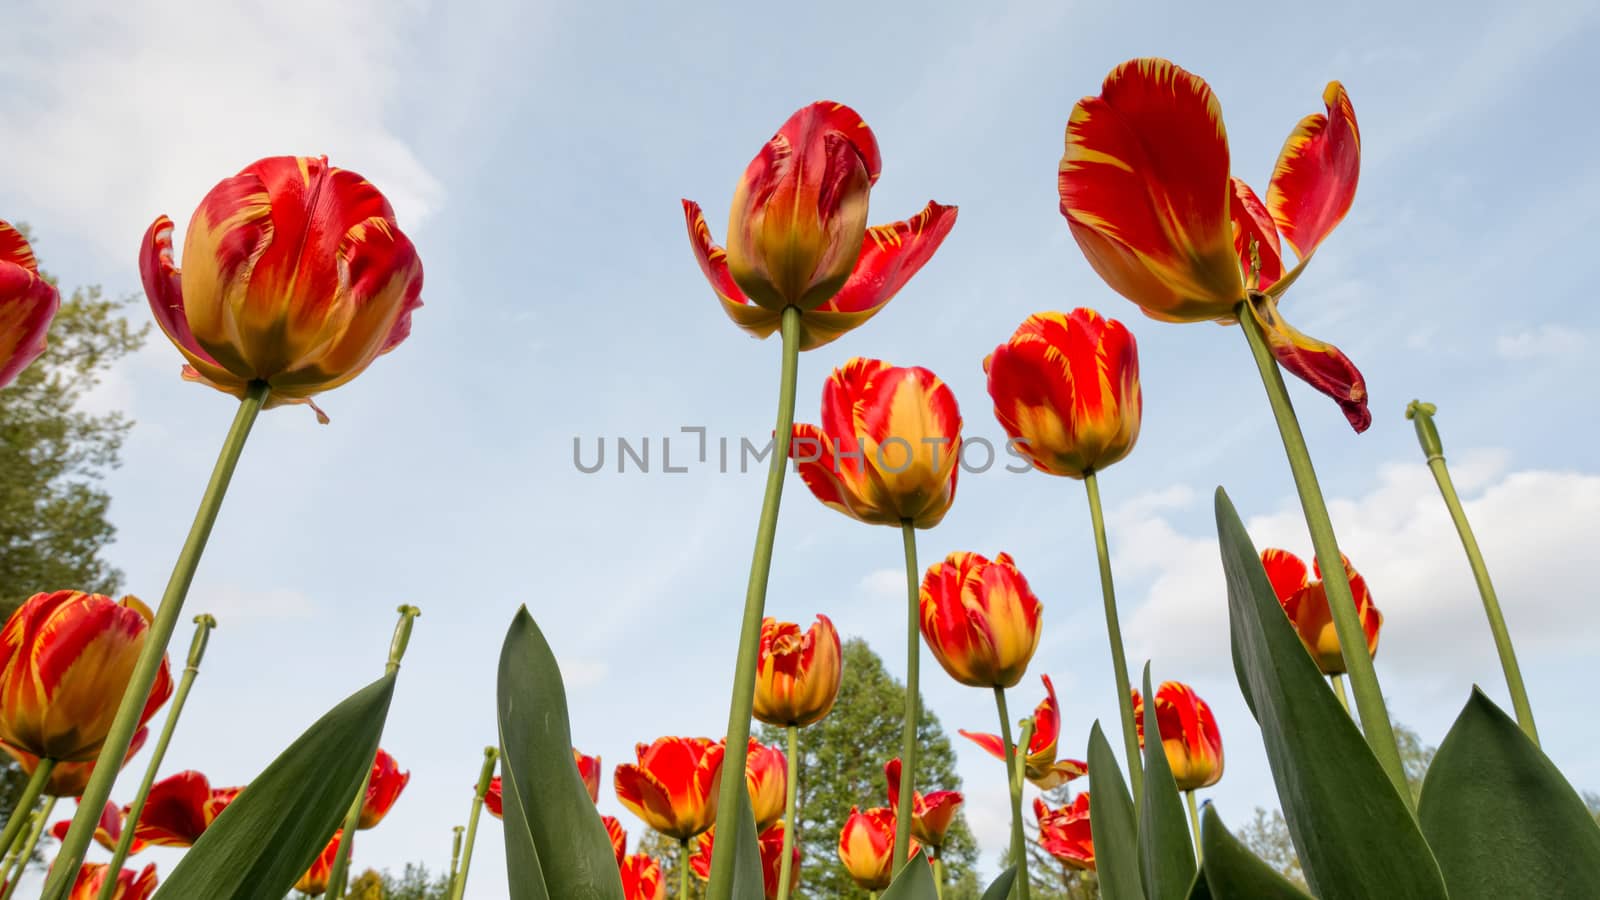 Tulips by Digoarpi